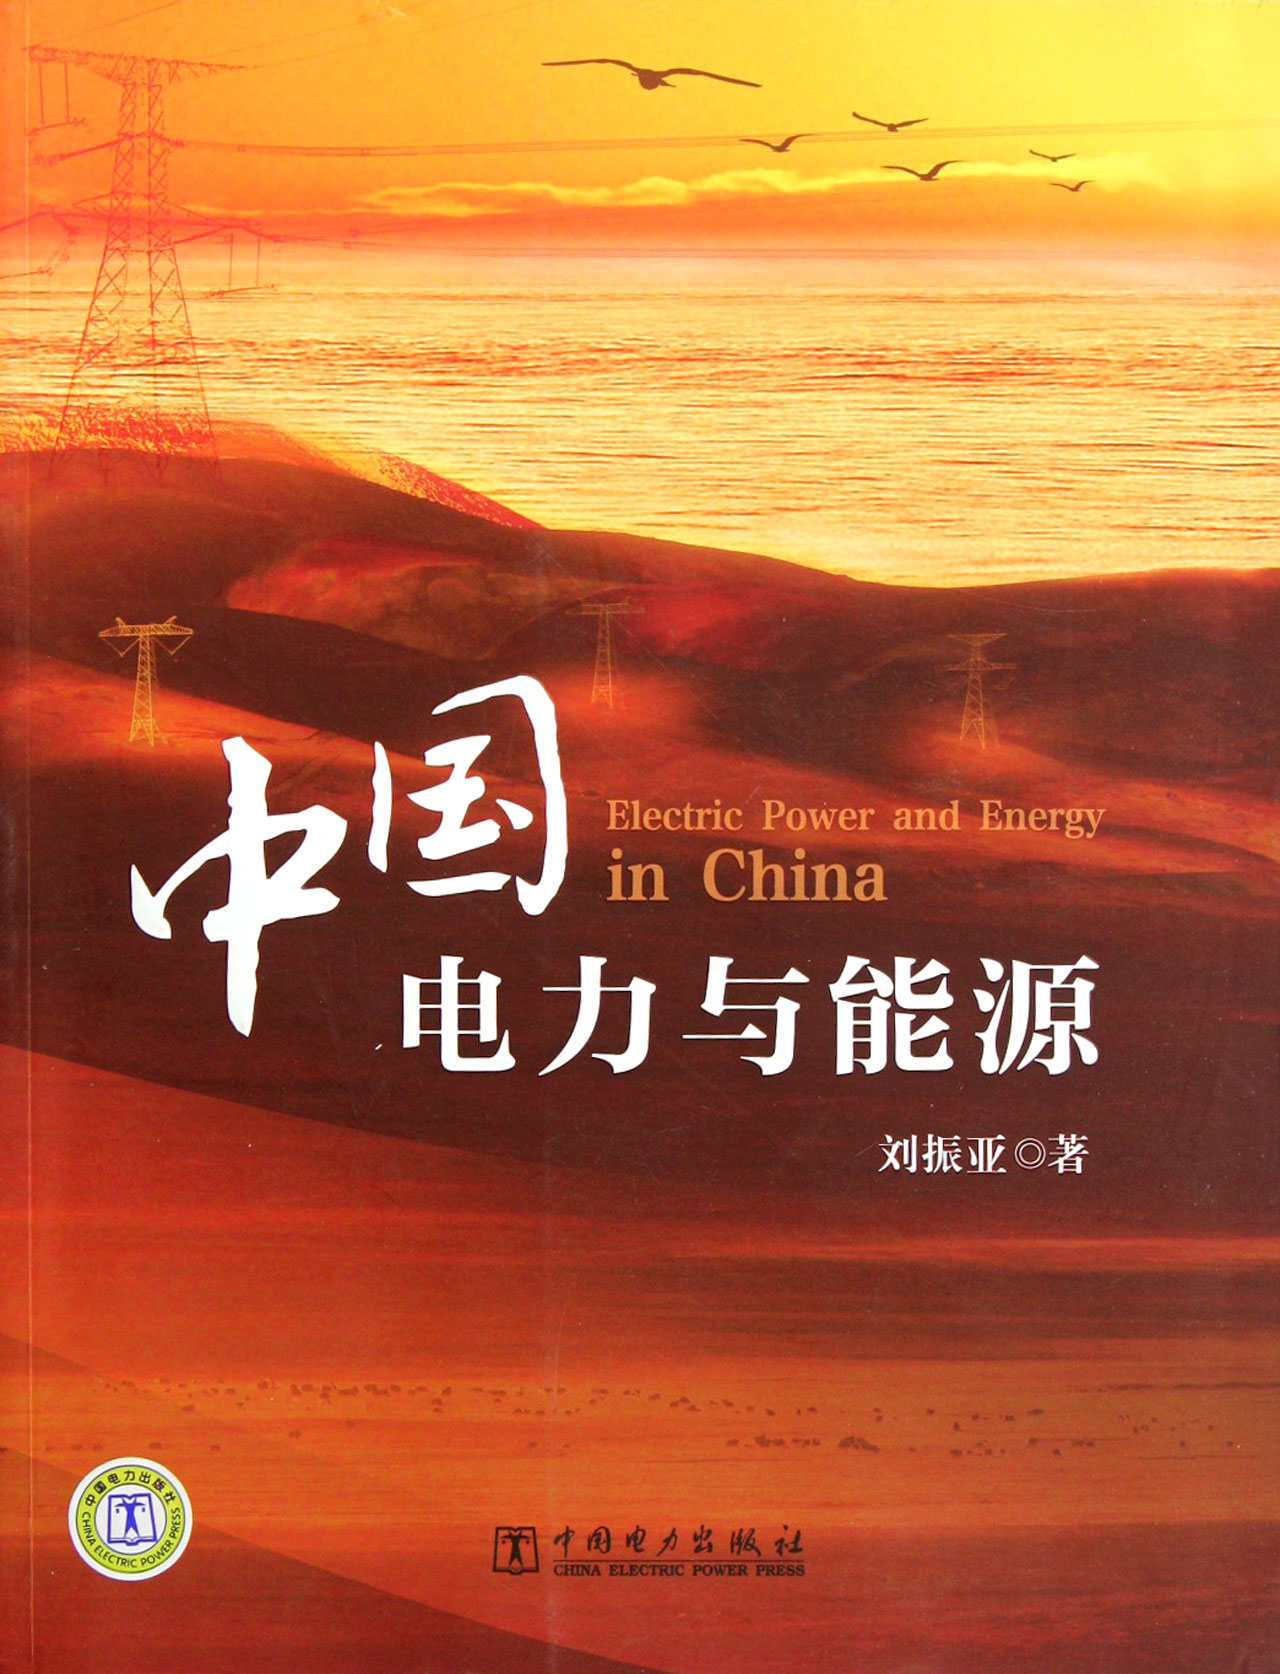 中国电力与能源 工业技术 书籍